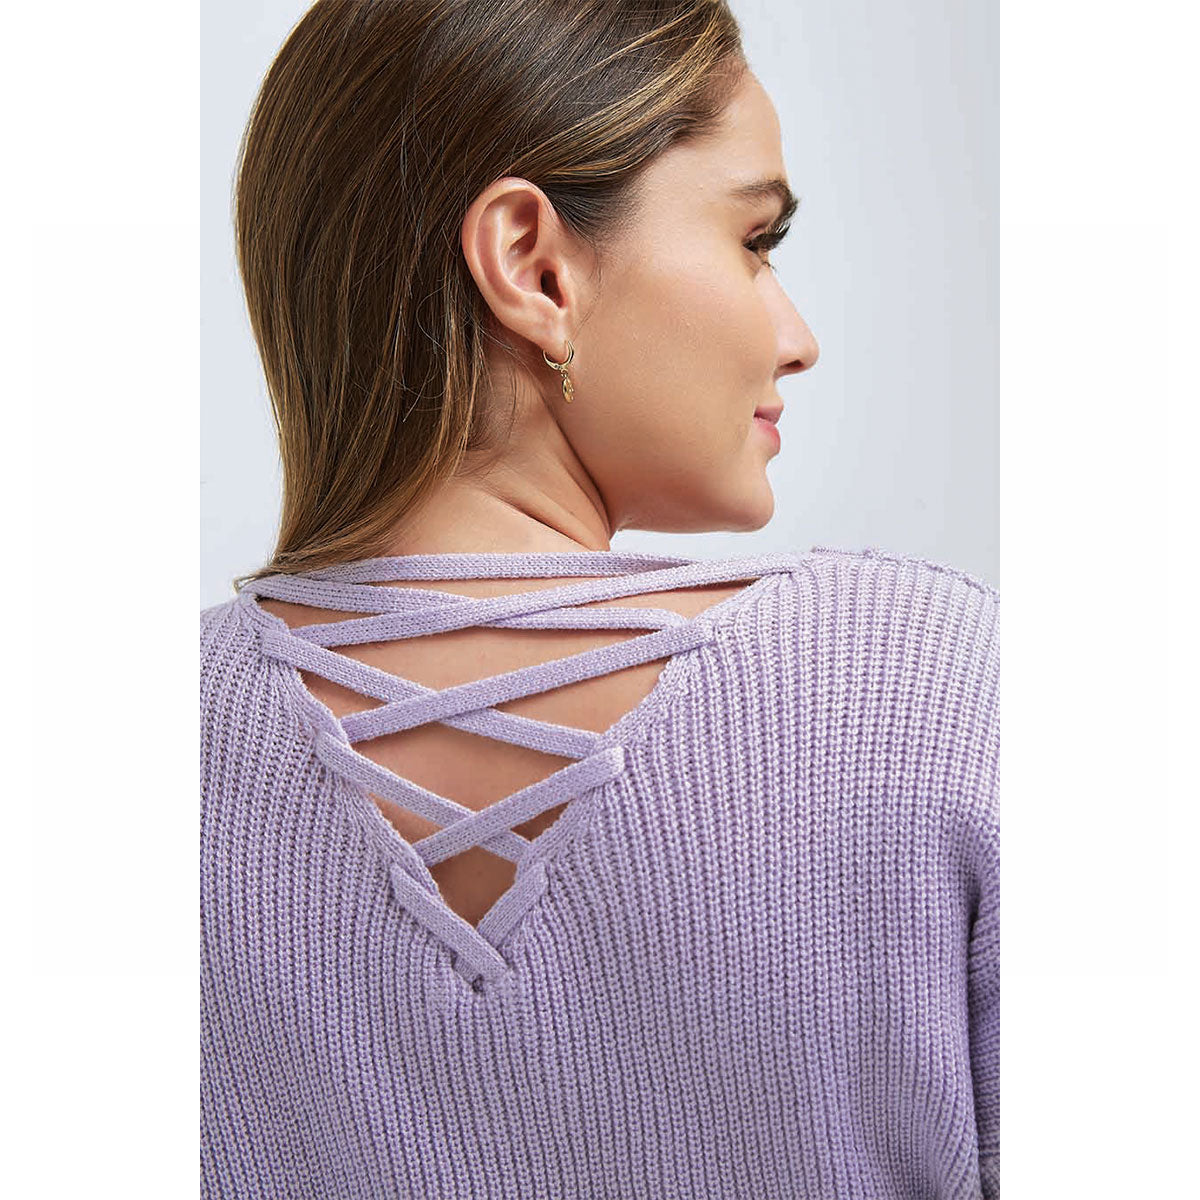 Suéter Para Mujer TREVO 1012-38 Lila con Detalle en La Espalda